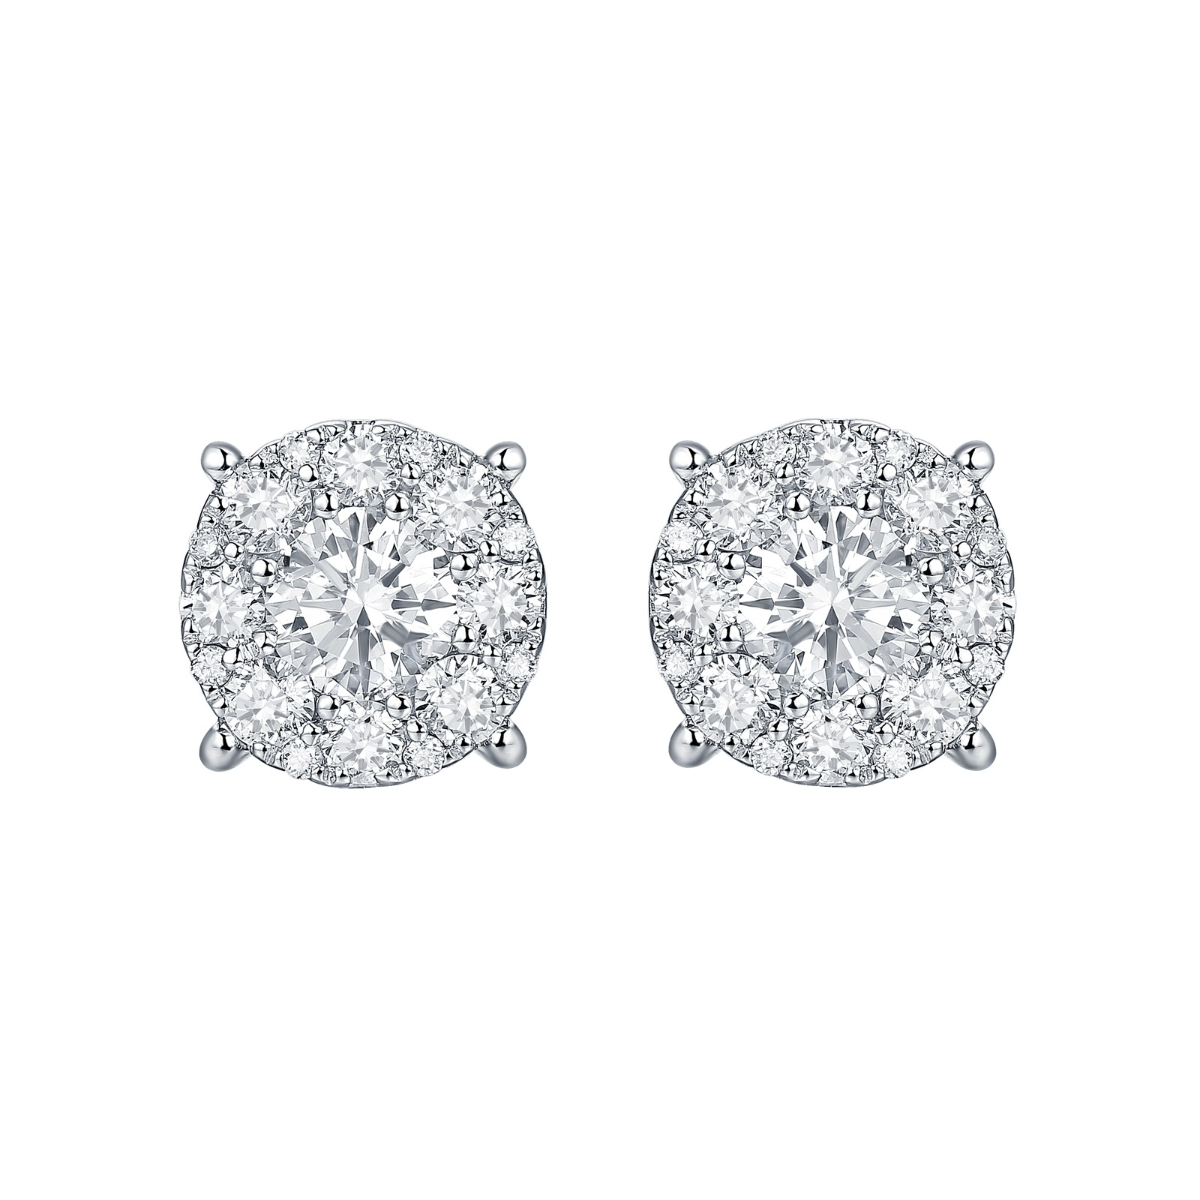 E35482WHT – 18K White Gold Diamond Earring, 0.63 TCW